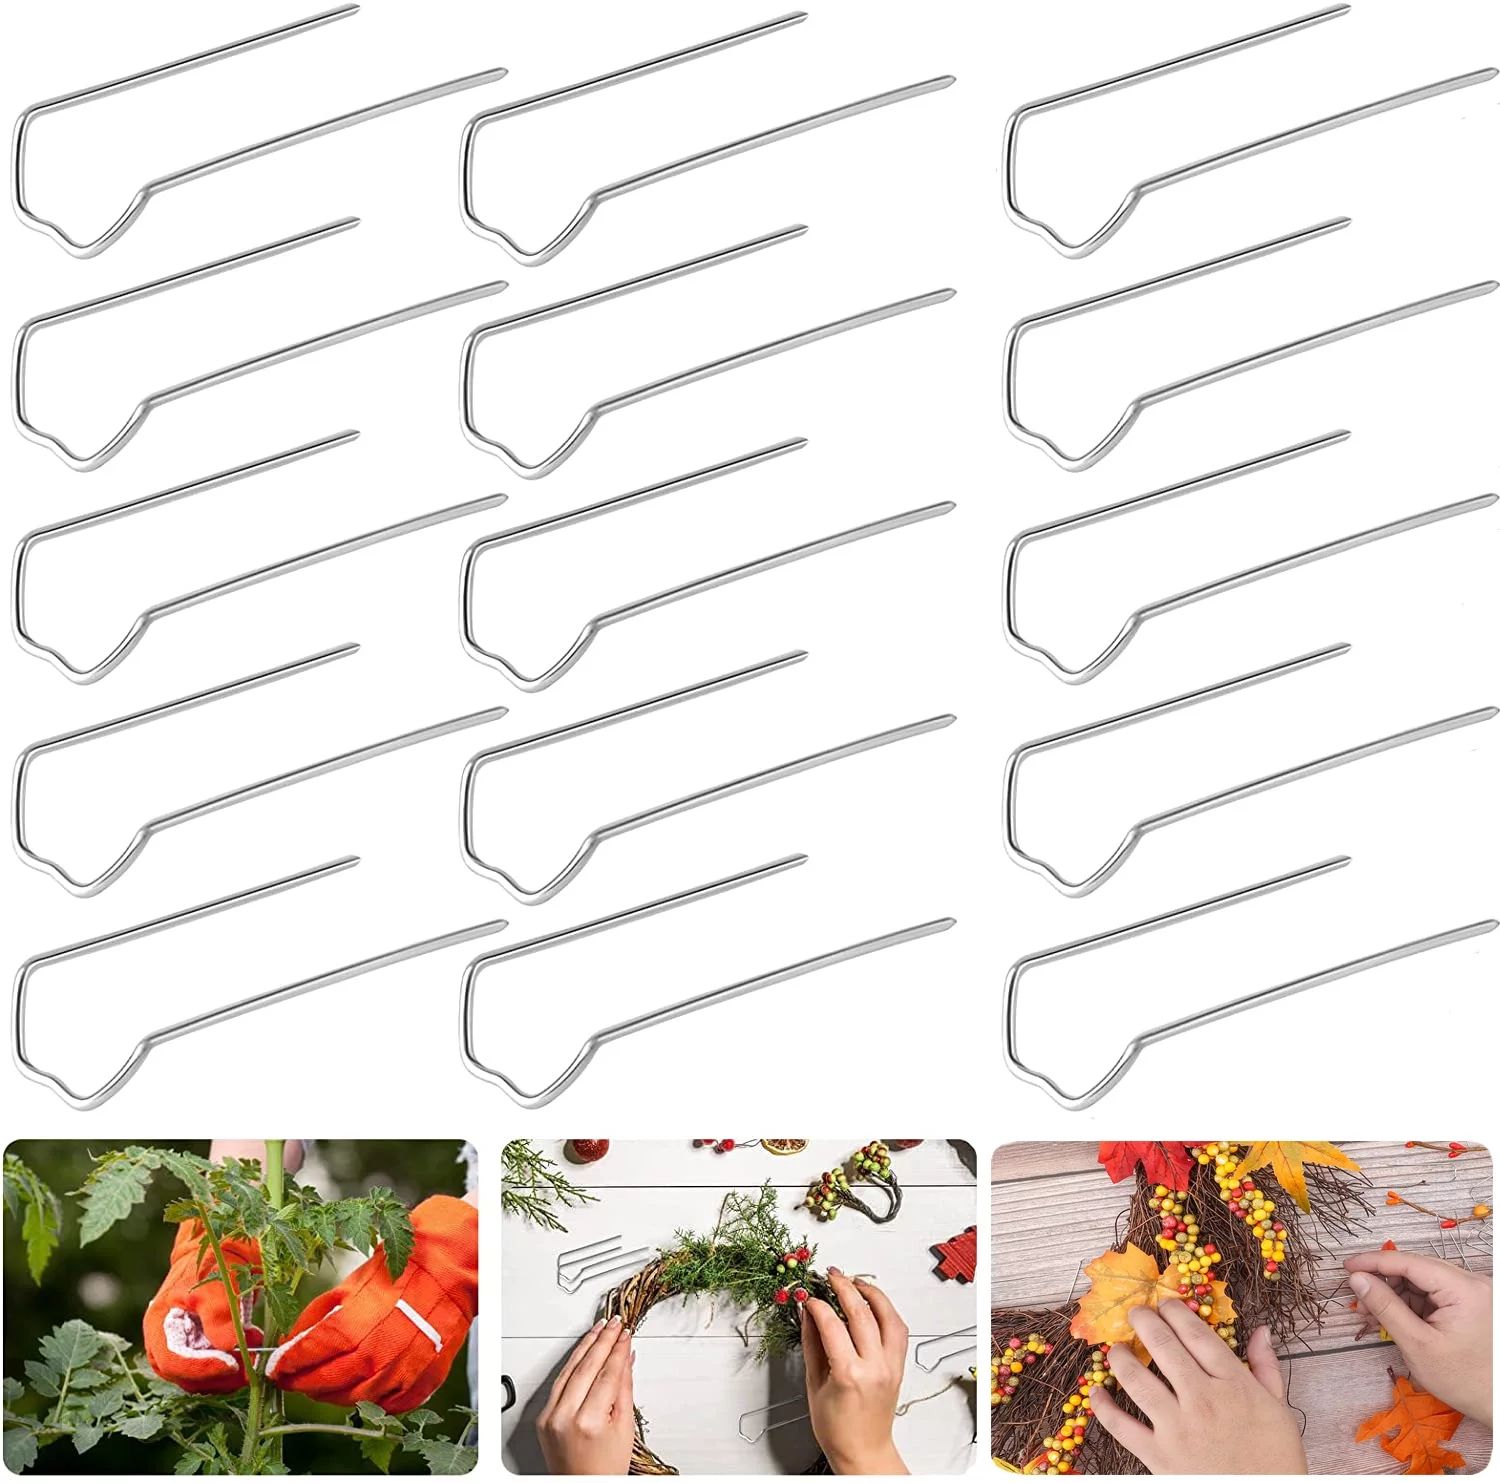 300 Pieces Greening Pins Floral Fern Pins U Flower Pins Wreath Making Supplies for Straw Wreaths ... | Walmart (US)